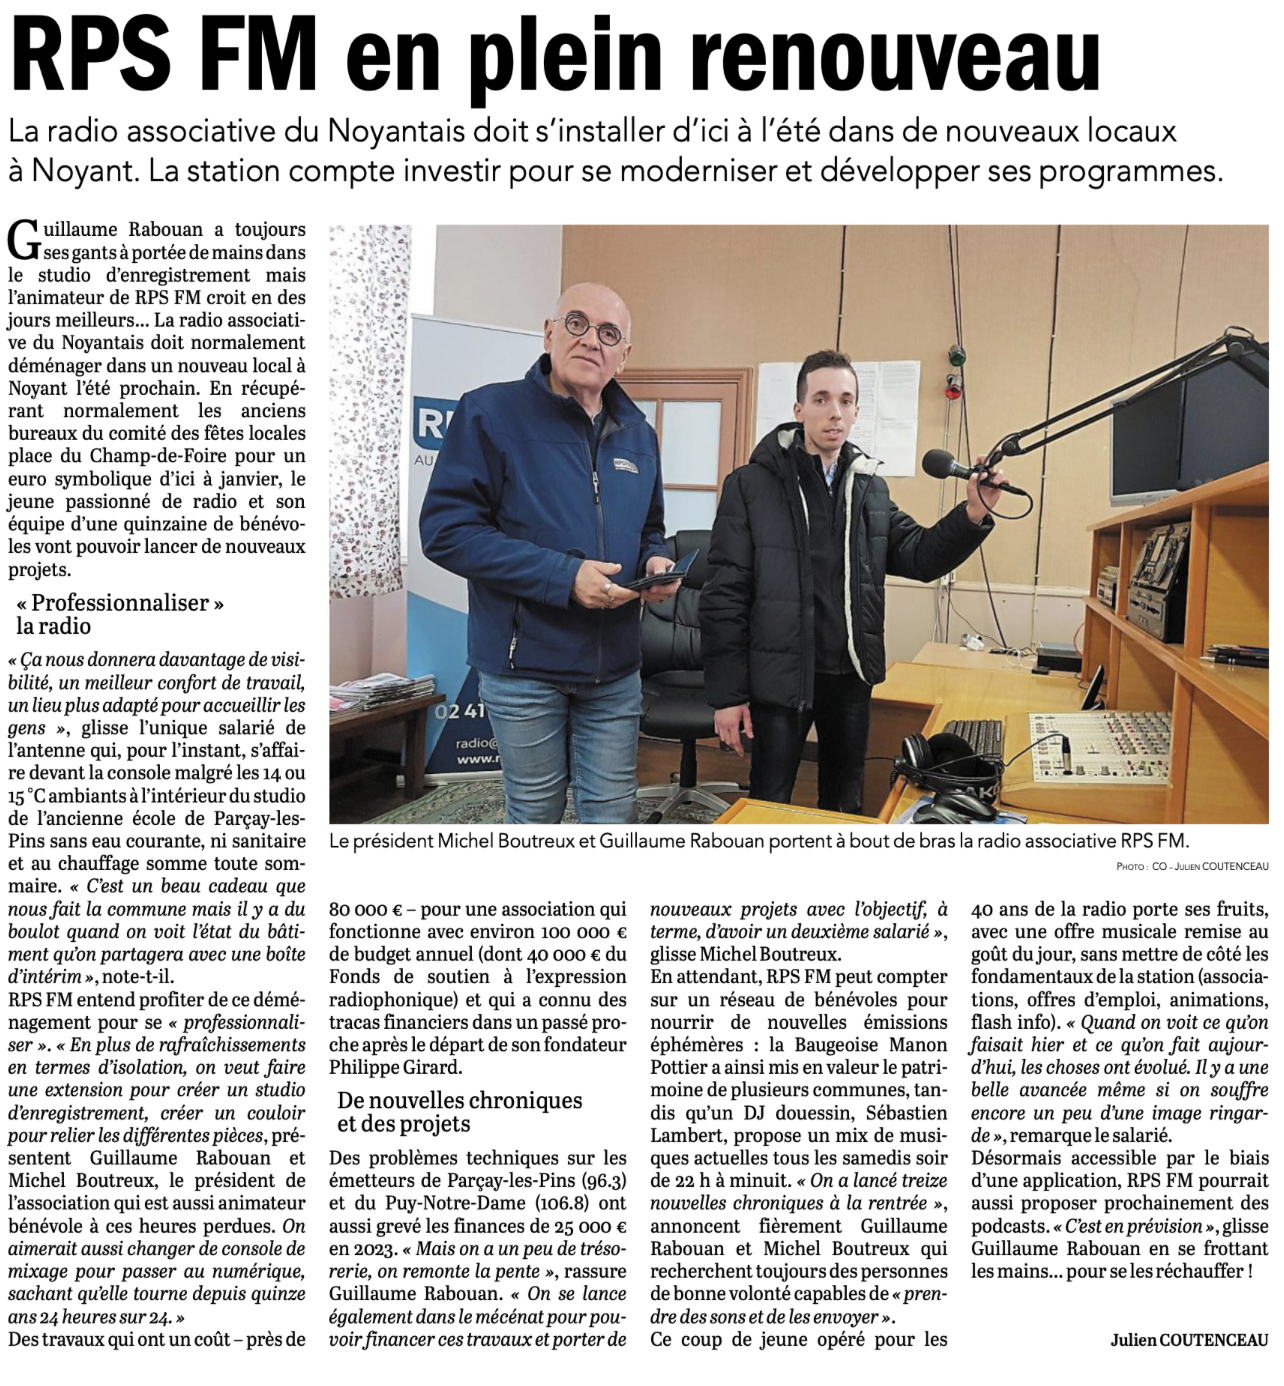 La radio associative RPS FM veut surfer sur une nouvelle dynamique en s’installant à Noyant